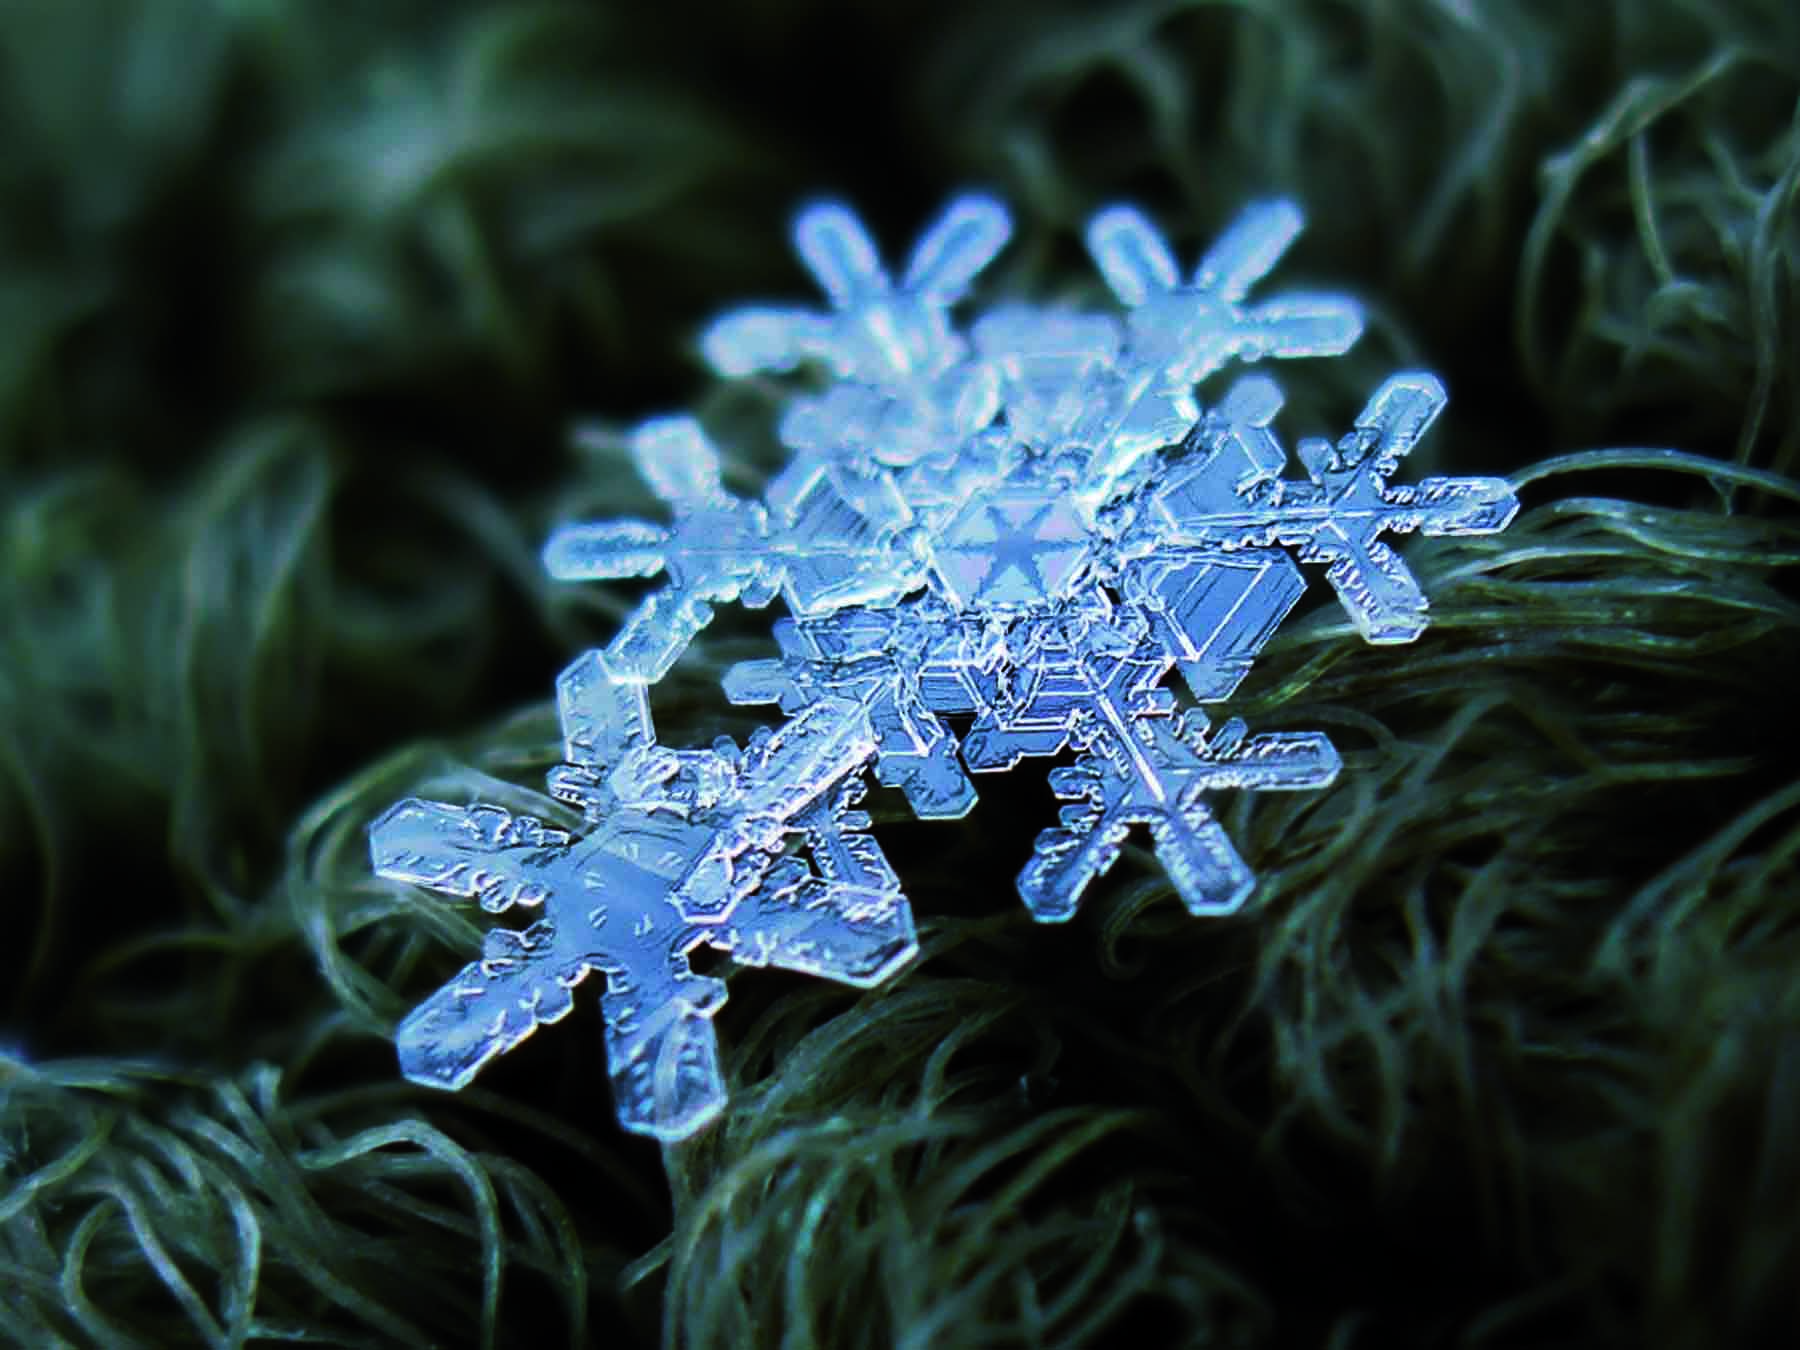 Os cristais de neve medem a partir de 1 milímetro de diâmetro e não vão além disso